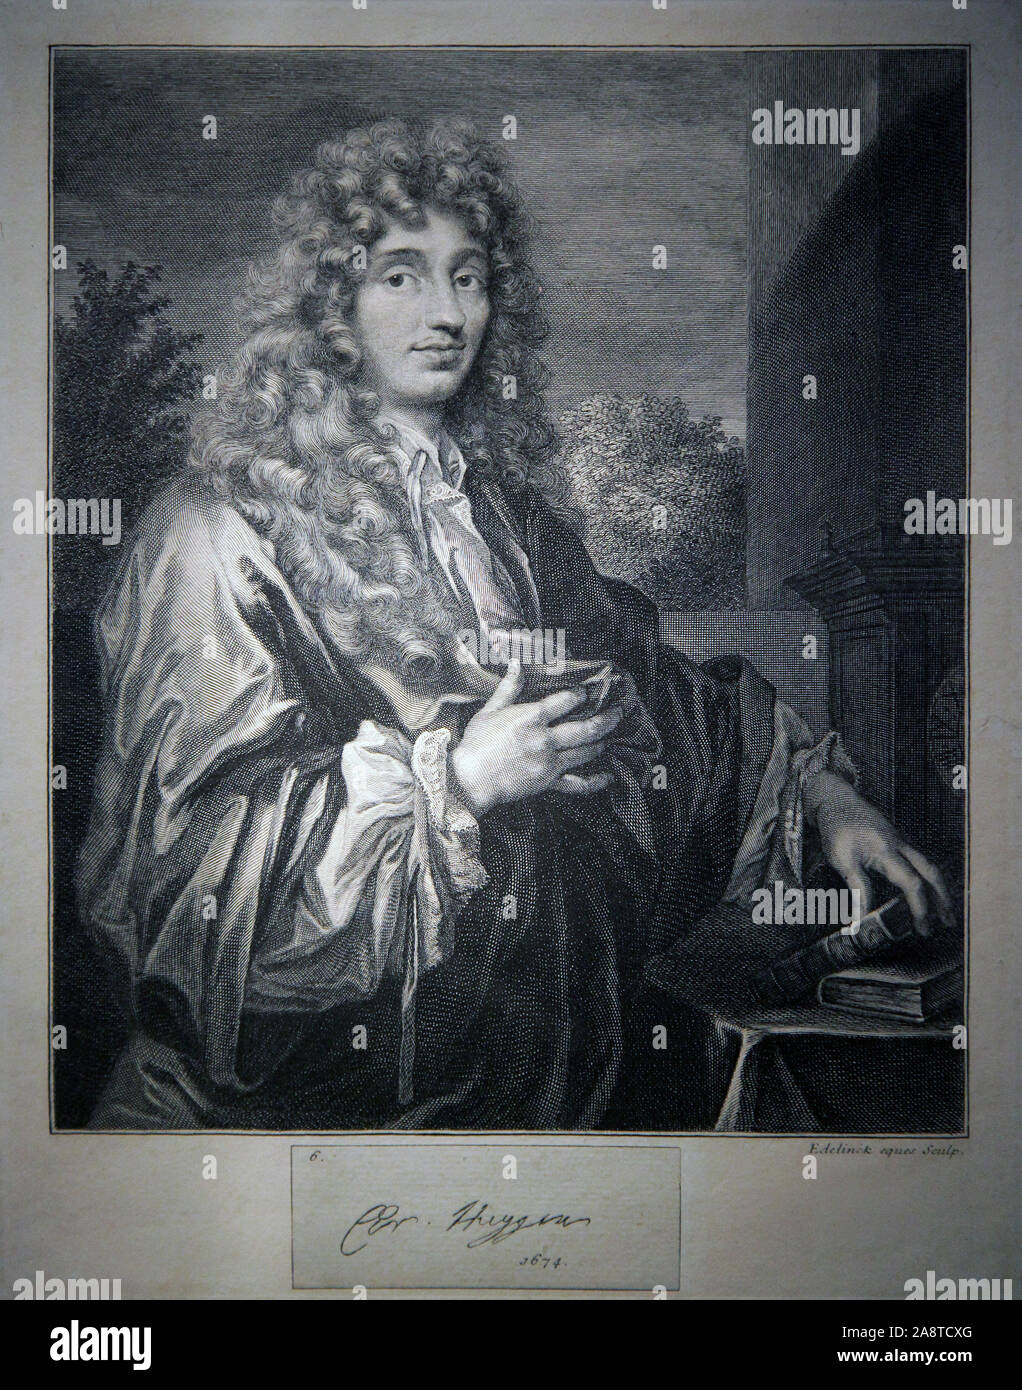 Christiaan Huygens (1629-1695) der niederländische Mathematiker, Astronom Physiker. Zeichnung von Caspar Netscher (1639 - 1684) Ein niederländischer Maler Portrait und Genre. Stockfoto